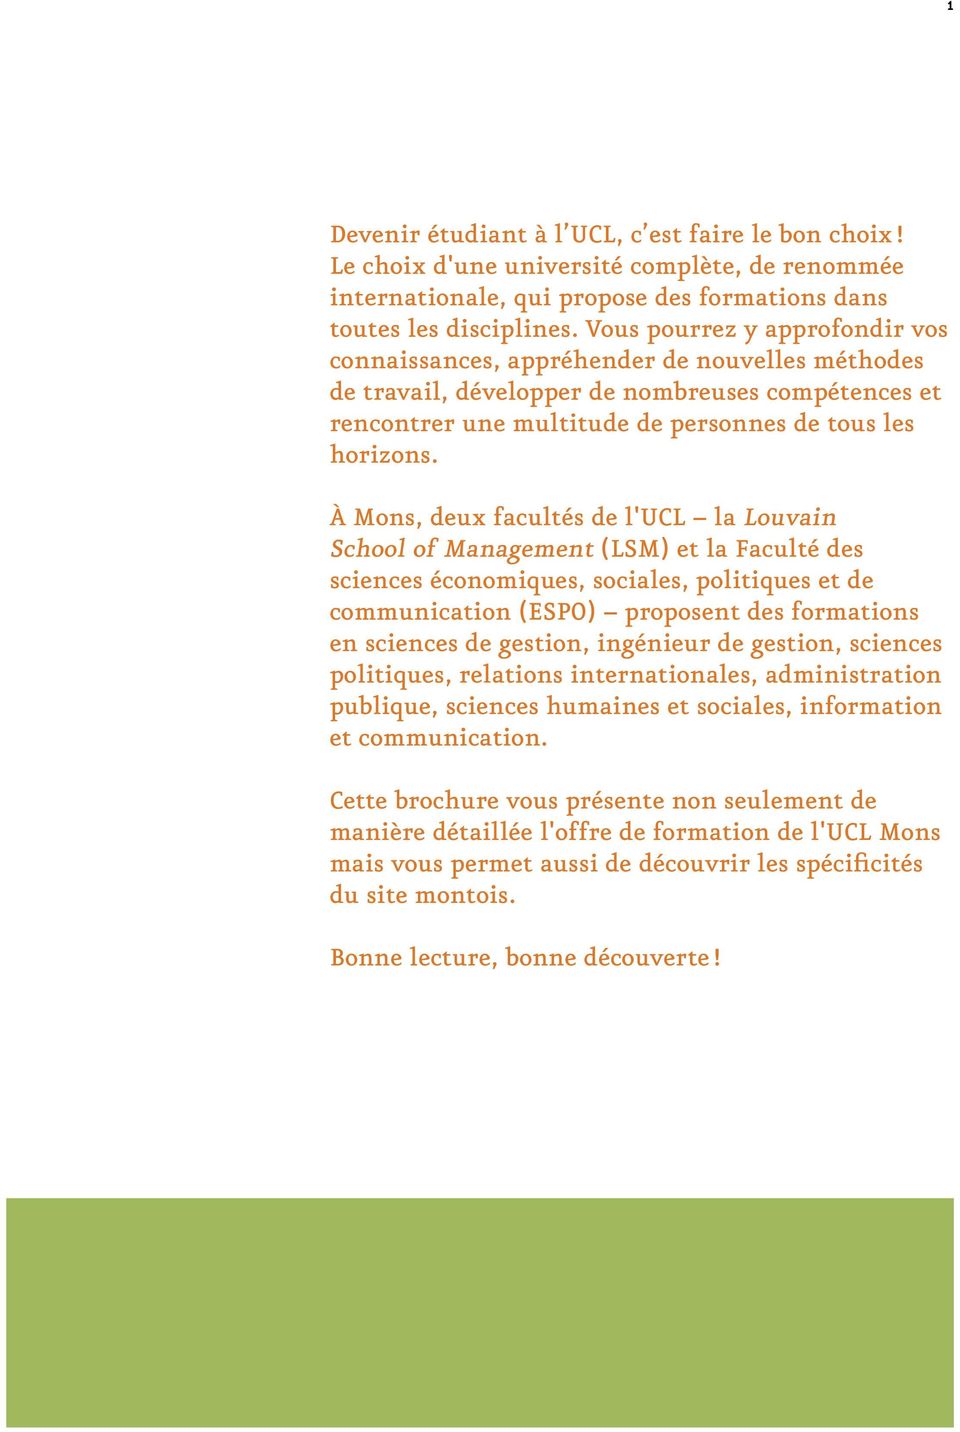 À Mons, deux facultés de l'ucl la Louvain School of Management (LSM) et la Faculté des sciences économiques, sociales, politiques et de communication (ESPO) proposent des formations en sciences de